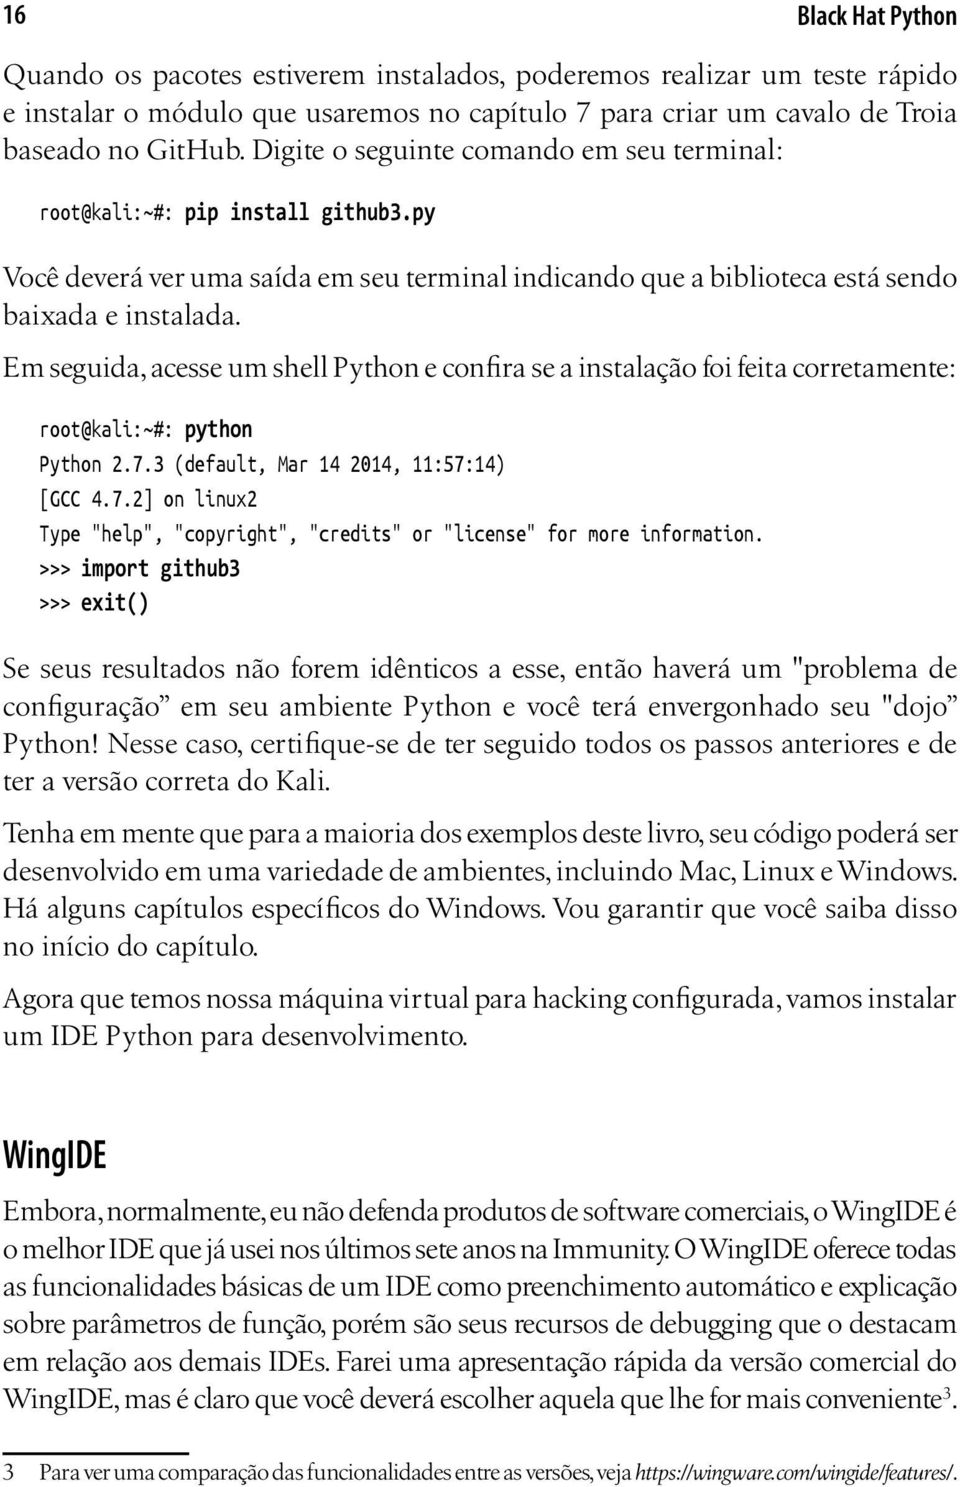 Em seguida, acesse um shell Python e confira se a instalação foi feita corretamente: root@kali:~#: python Python 2.7.3 (default, Mar 14 2014, 11:57:14) [GCC 4.7.2] on linux2 Type "help", "copyright", "credits" or "license" for more information.